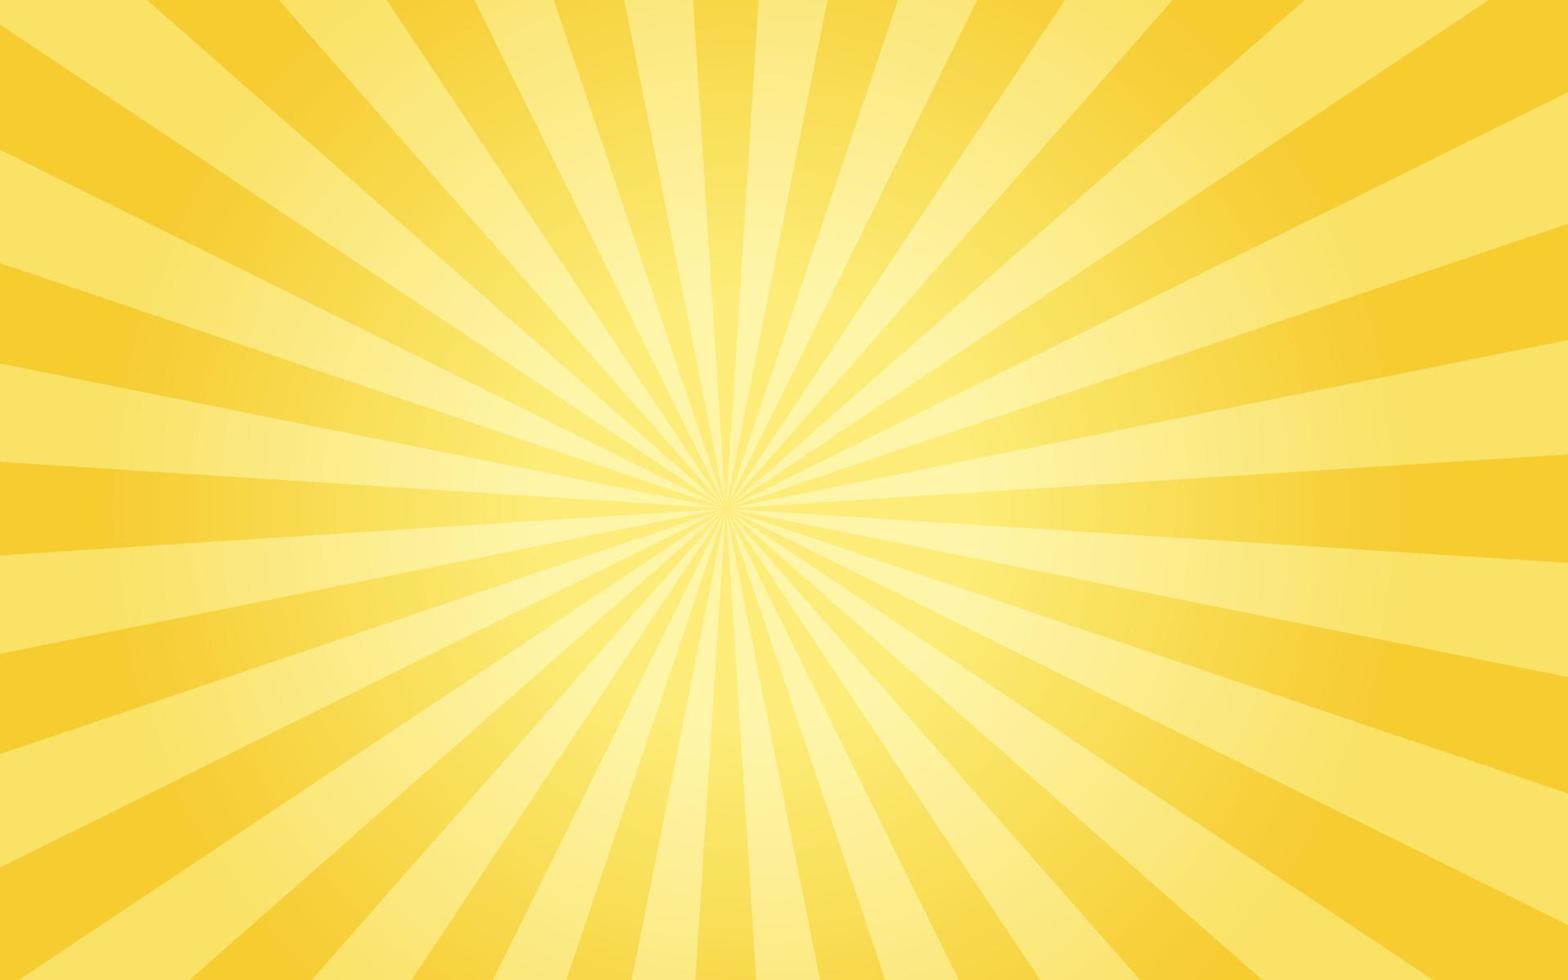 Sonnenstrahlen im Retro-Vintage-Stil auf gelbem Hintergrund, Sunburst-Musterhintergrund. Sommer-Vektor-Illustration vektor